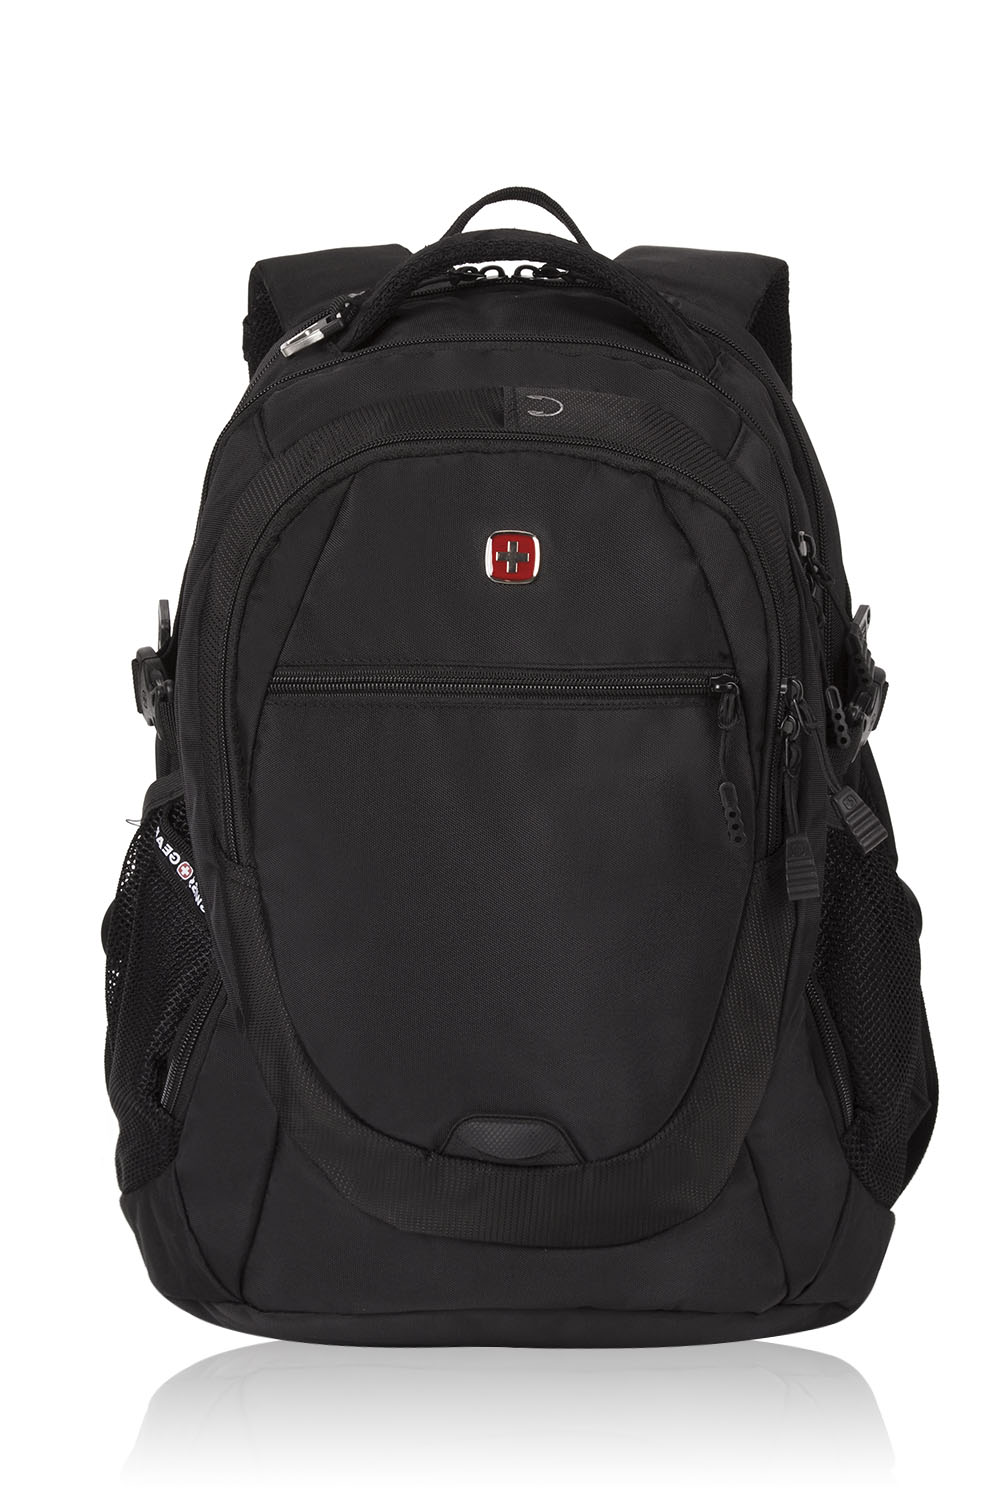 Swiss Gear Men/'s Outdoor Travel Backpack Men Waterproof School Laptop Bags